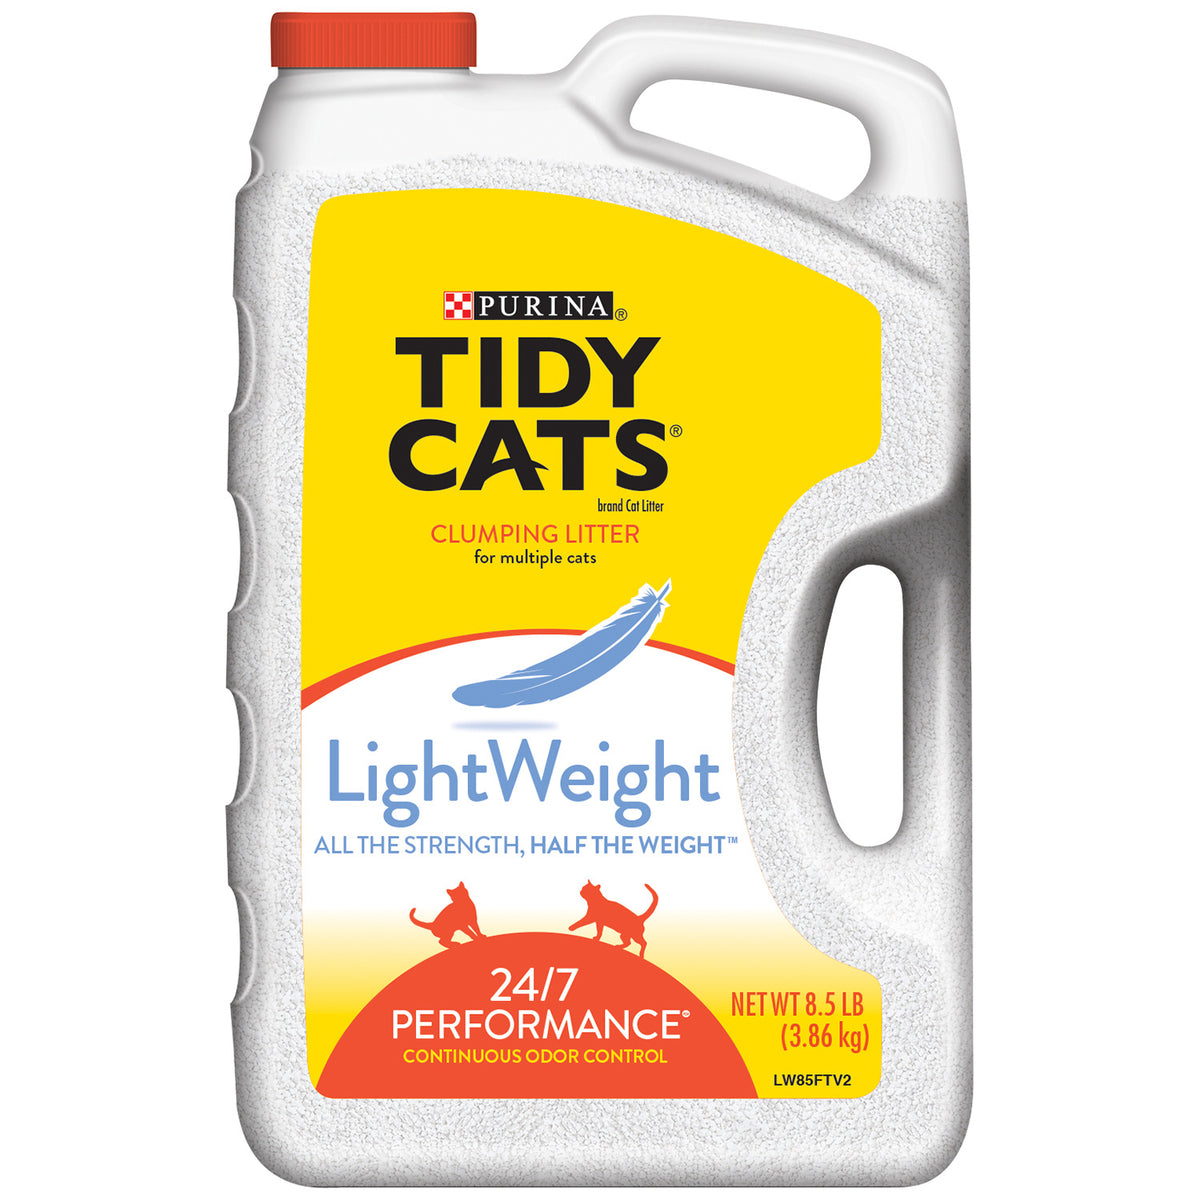 Tidy Cats 15366 LightWeight Clumping Cat Litter, 8.5 lbs